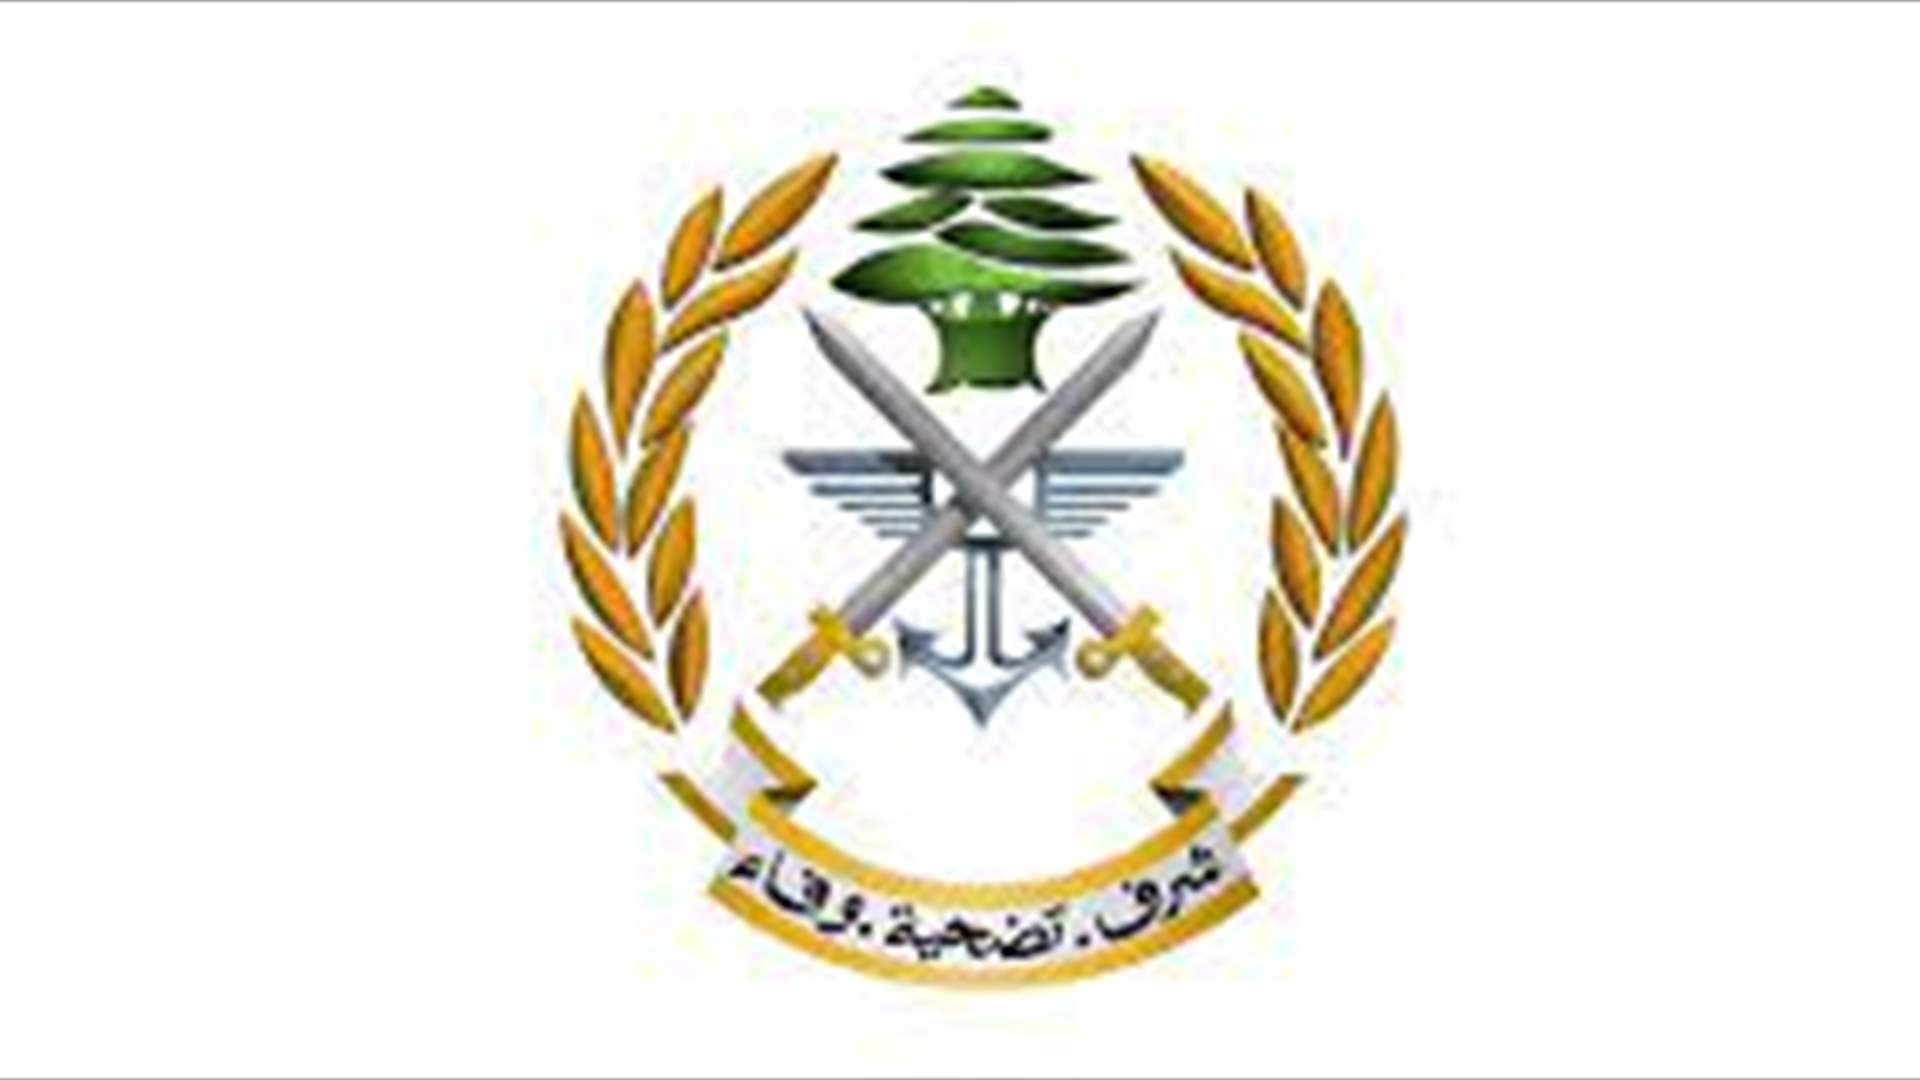 الجيش: توقيف أشخاص لتورطهم في أعمال سرقة